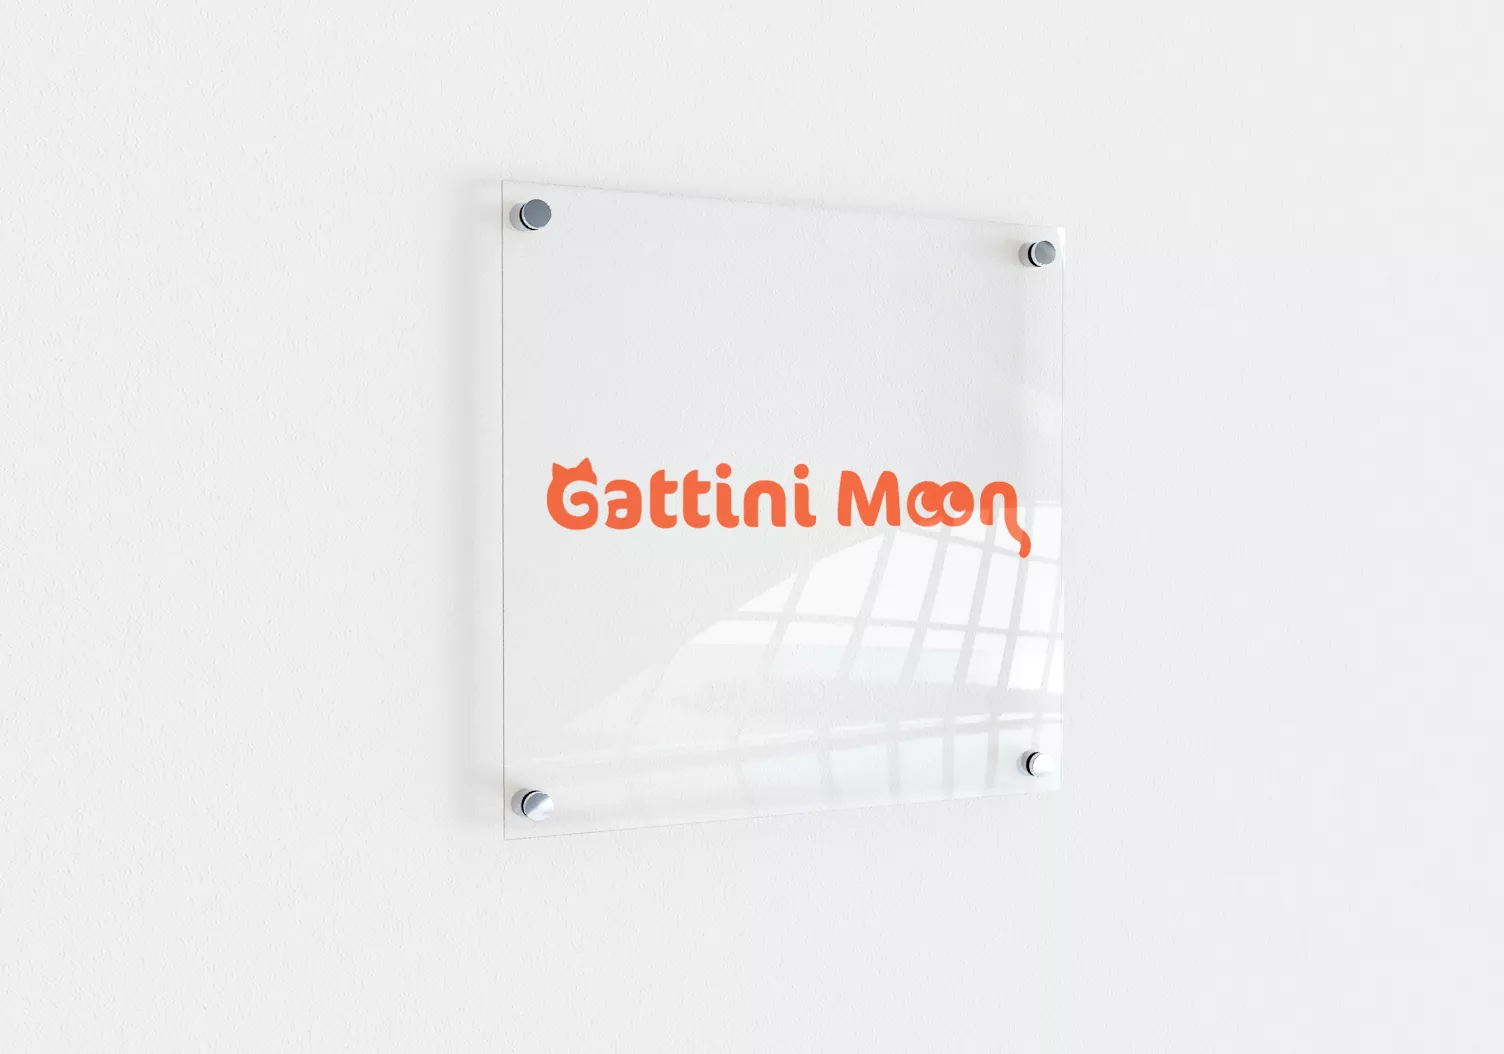 Gattini Moon - projekt loga, wizualizacja na tabliczce przyściennej